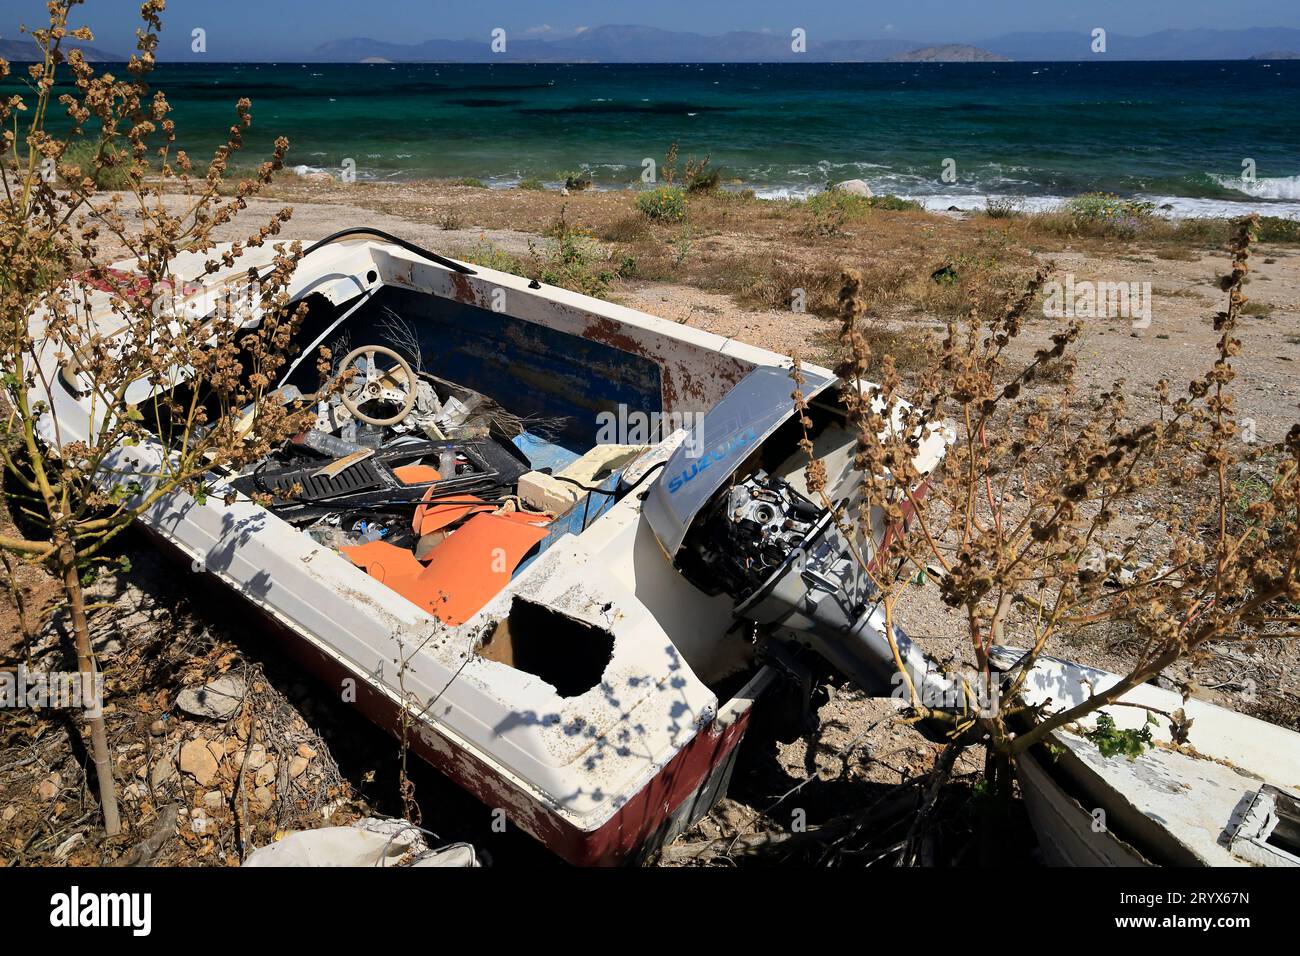 Bateau naufragé sur une plage, île Agistri, groupe d'îles Saroniques, Grèce. Prise en mai 2023 Banque D'Images